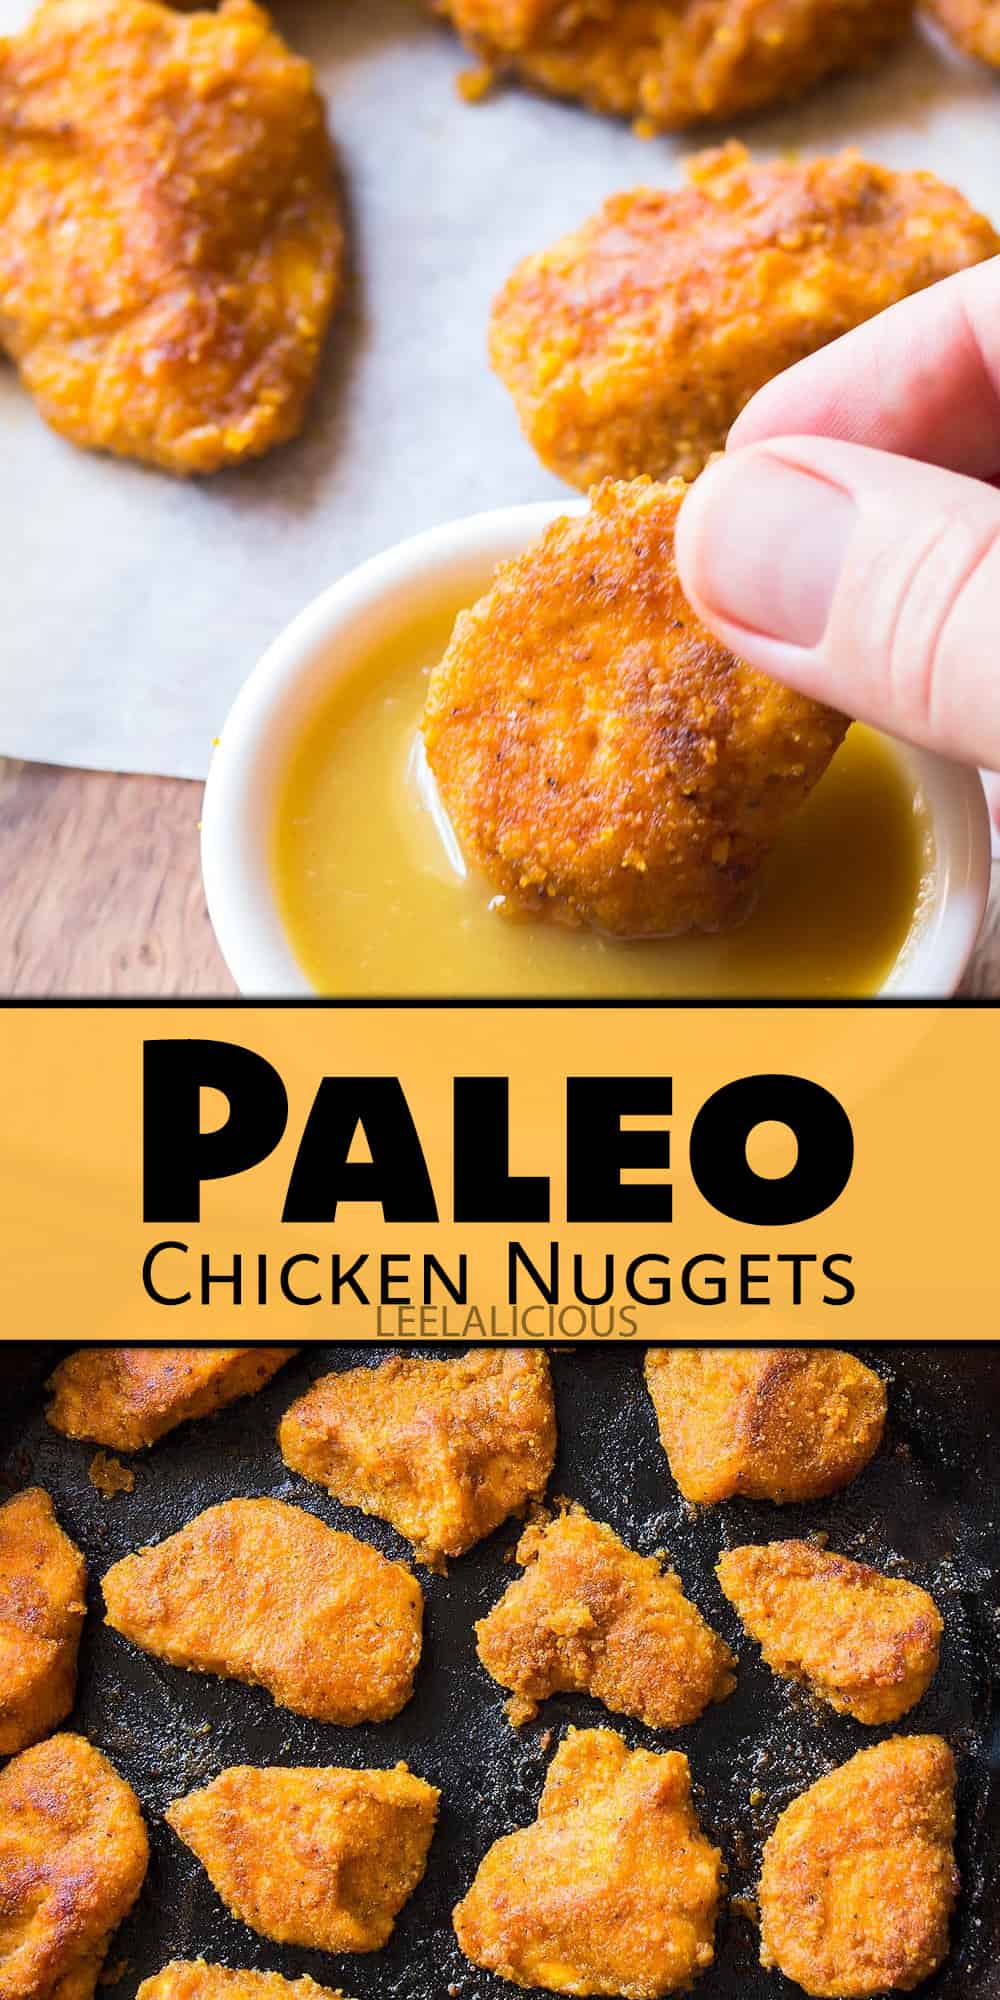 Paleo Chicken Nuggets